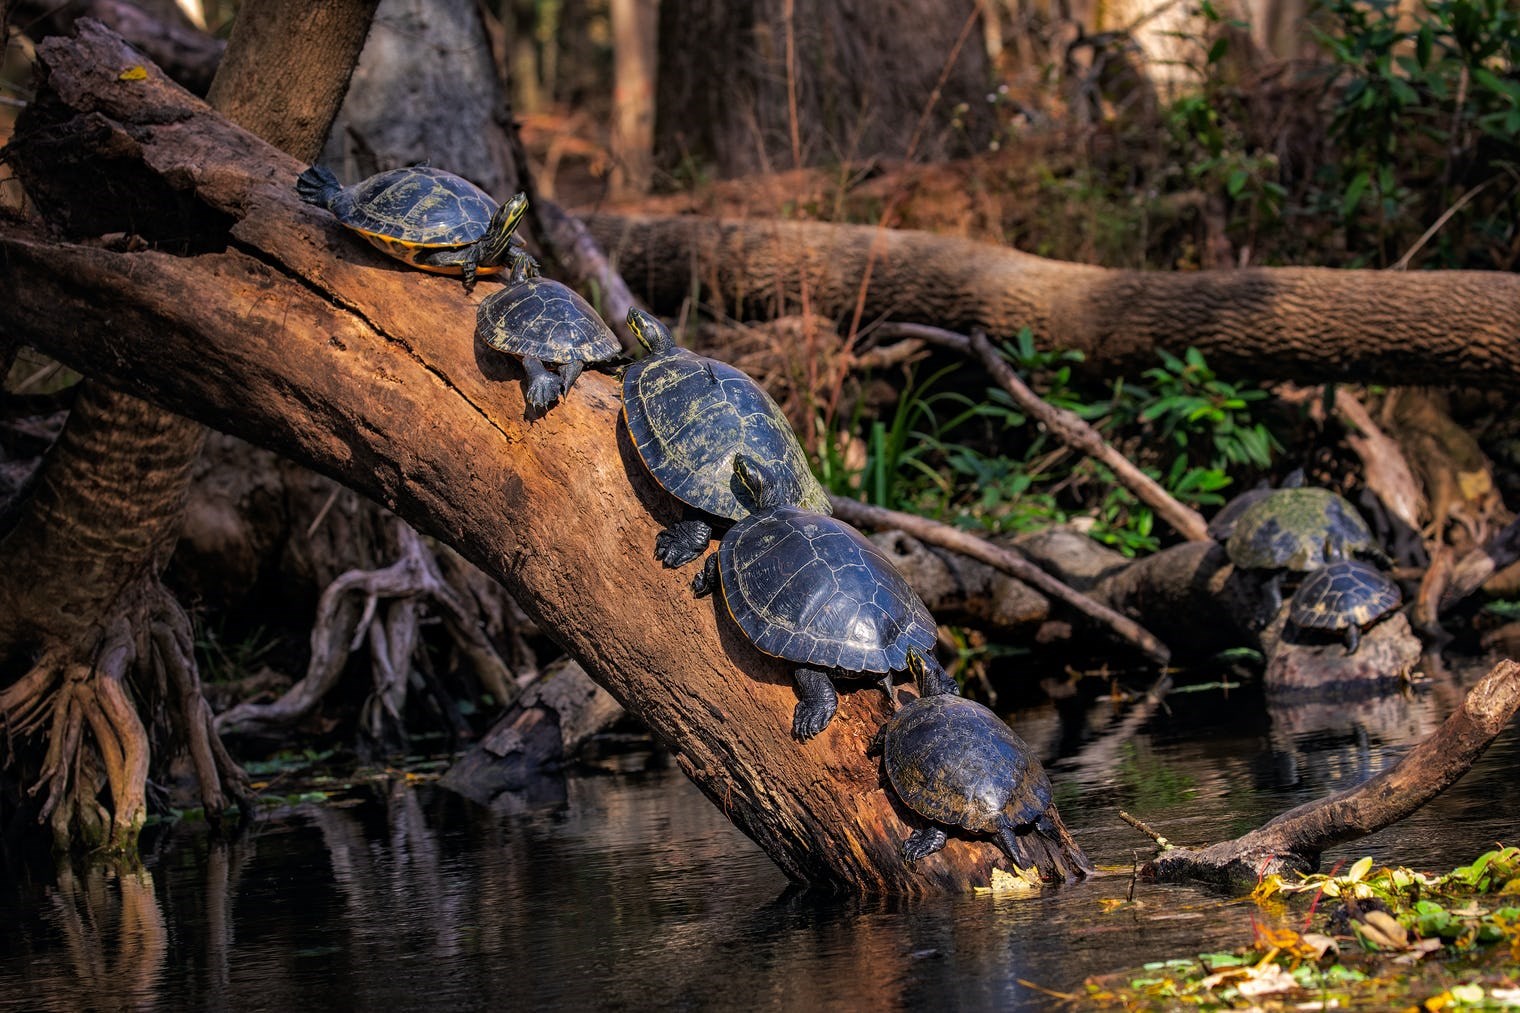 Ninja Kaplumbağalar kaplumbağa popülasyonunu nasıl etkiledi?